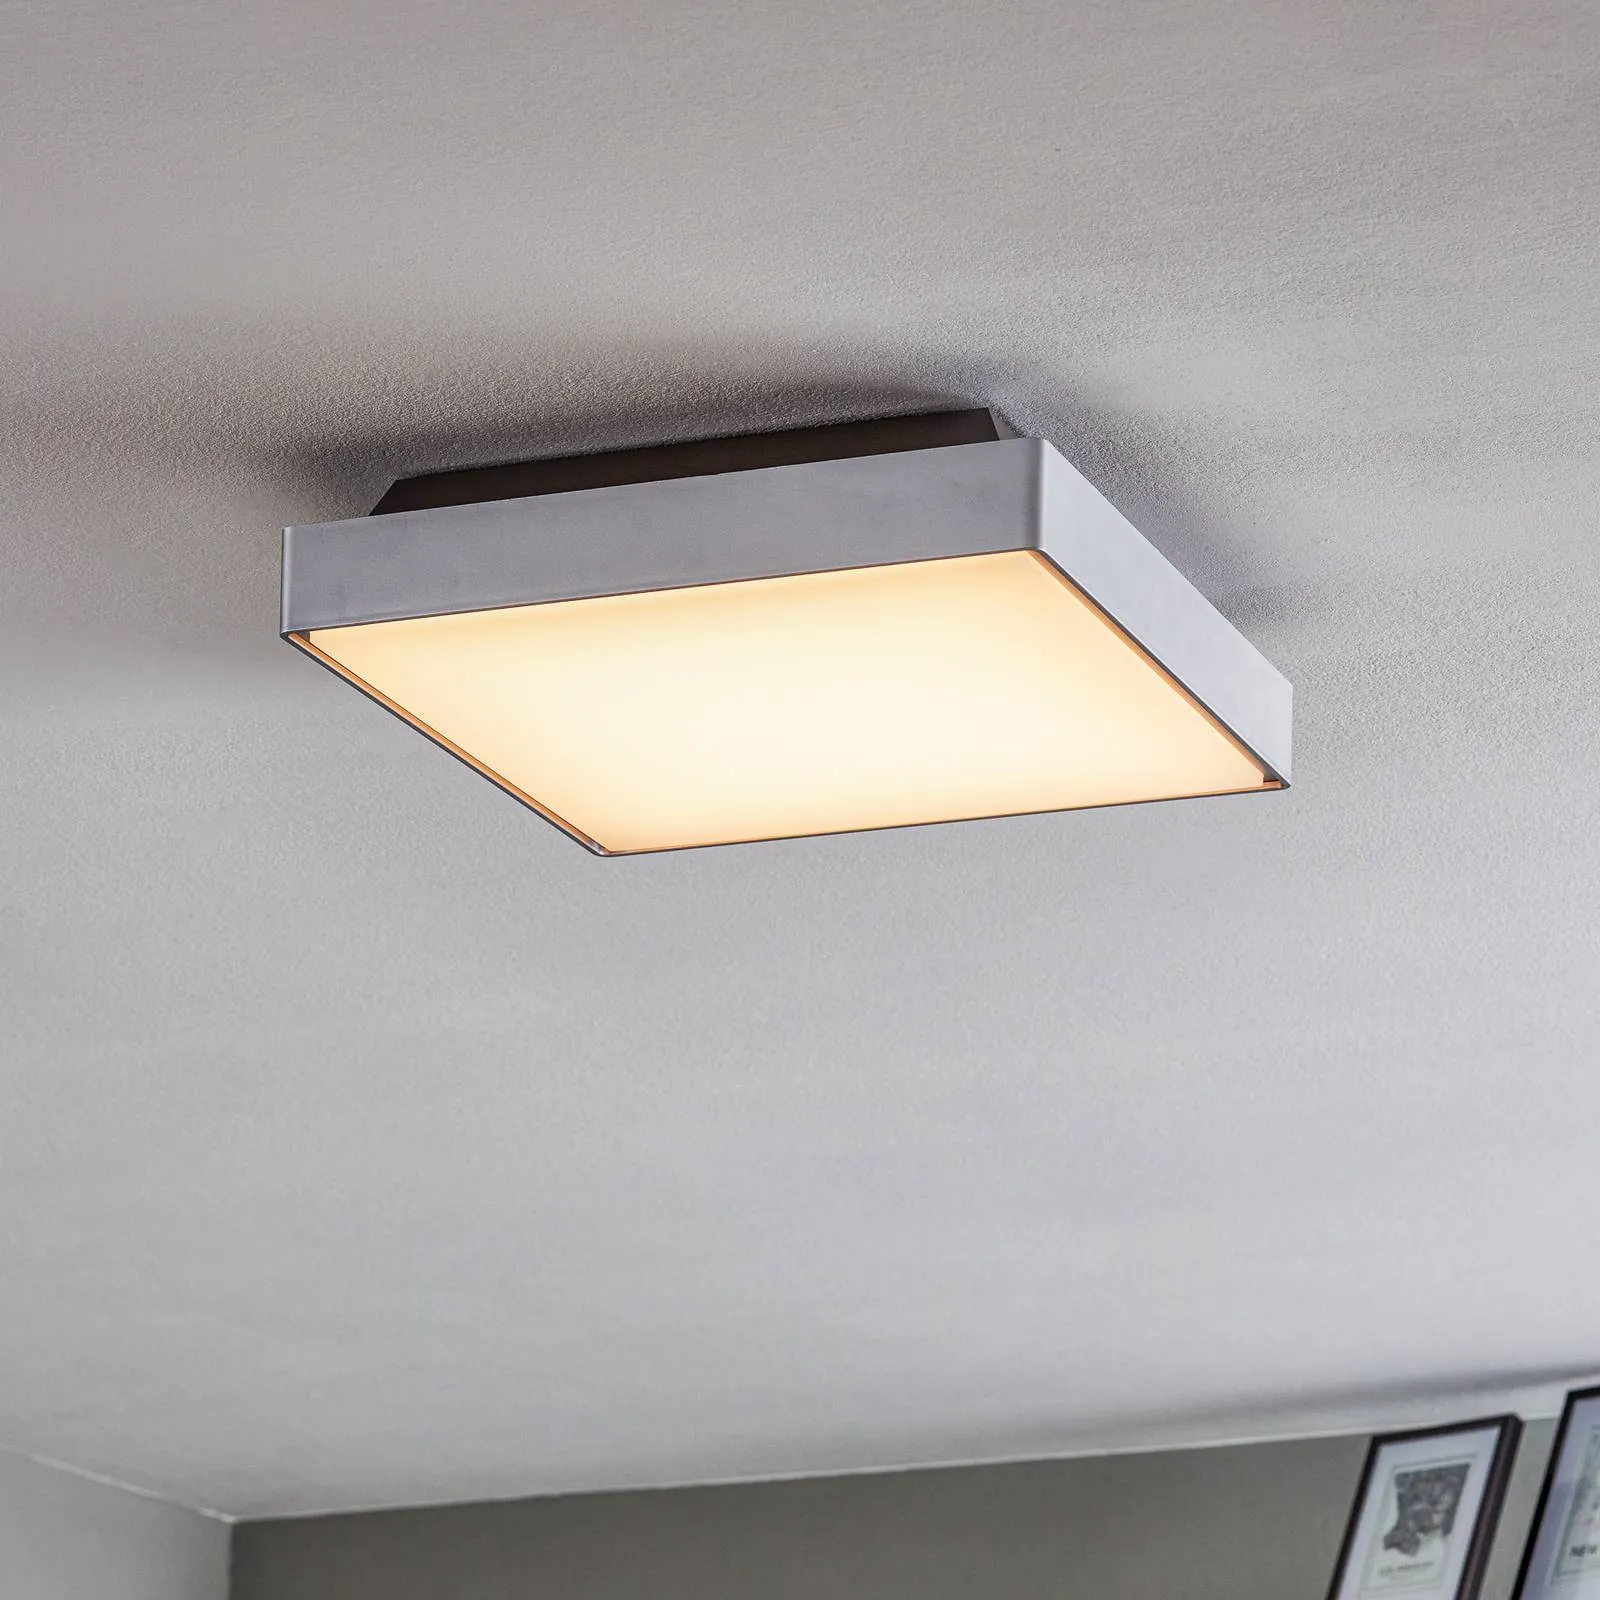 Robust LED ceiling light Kössel for outdoors